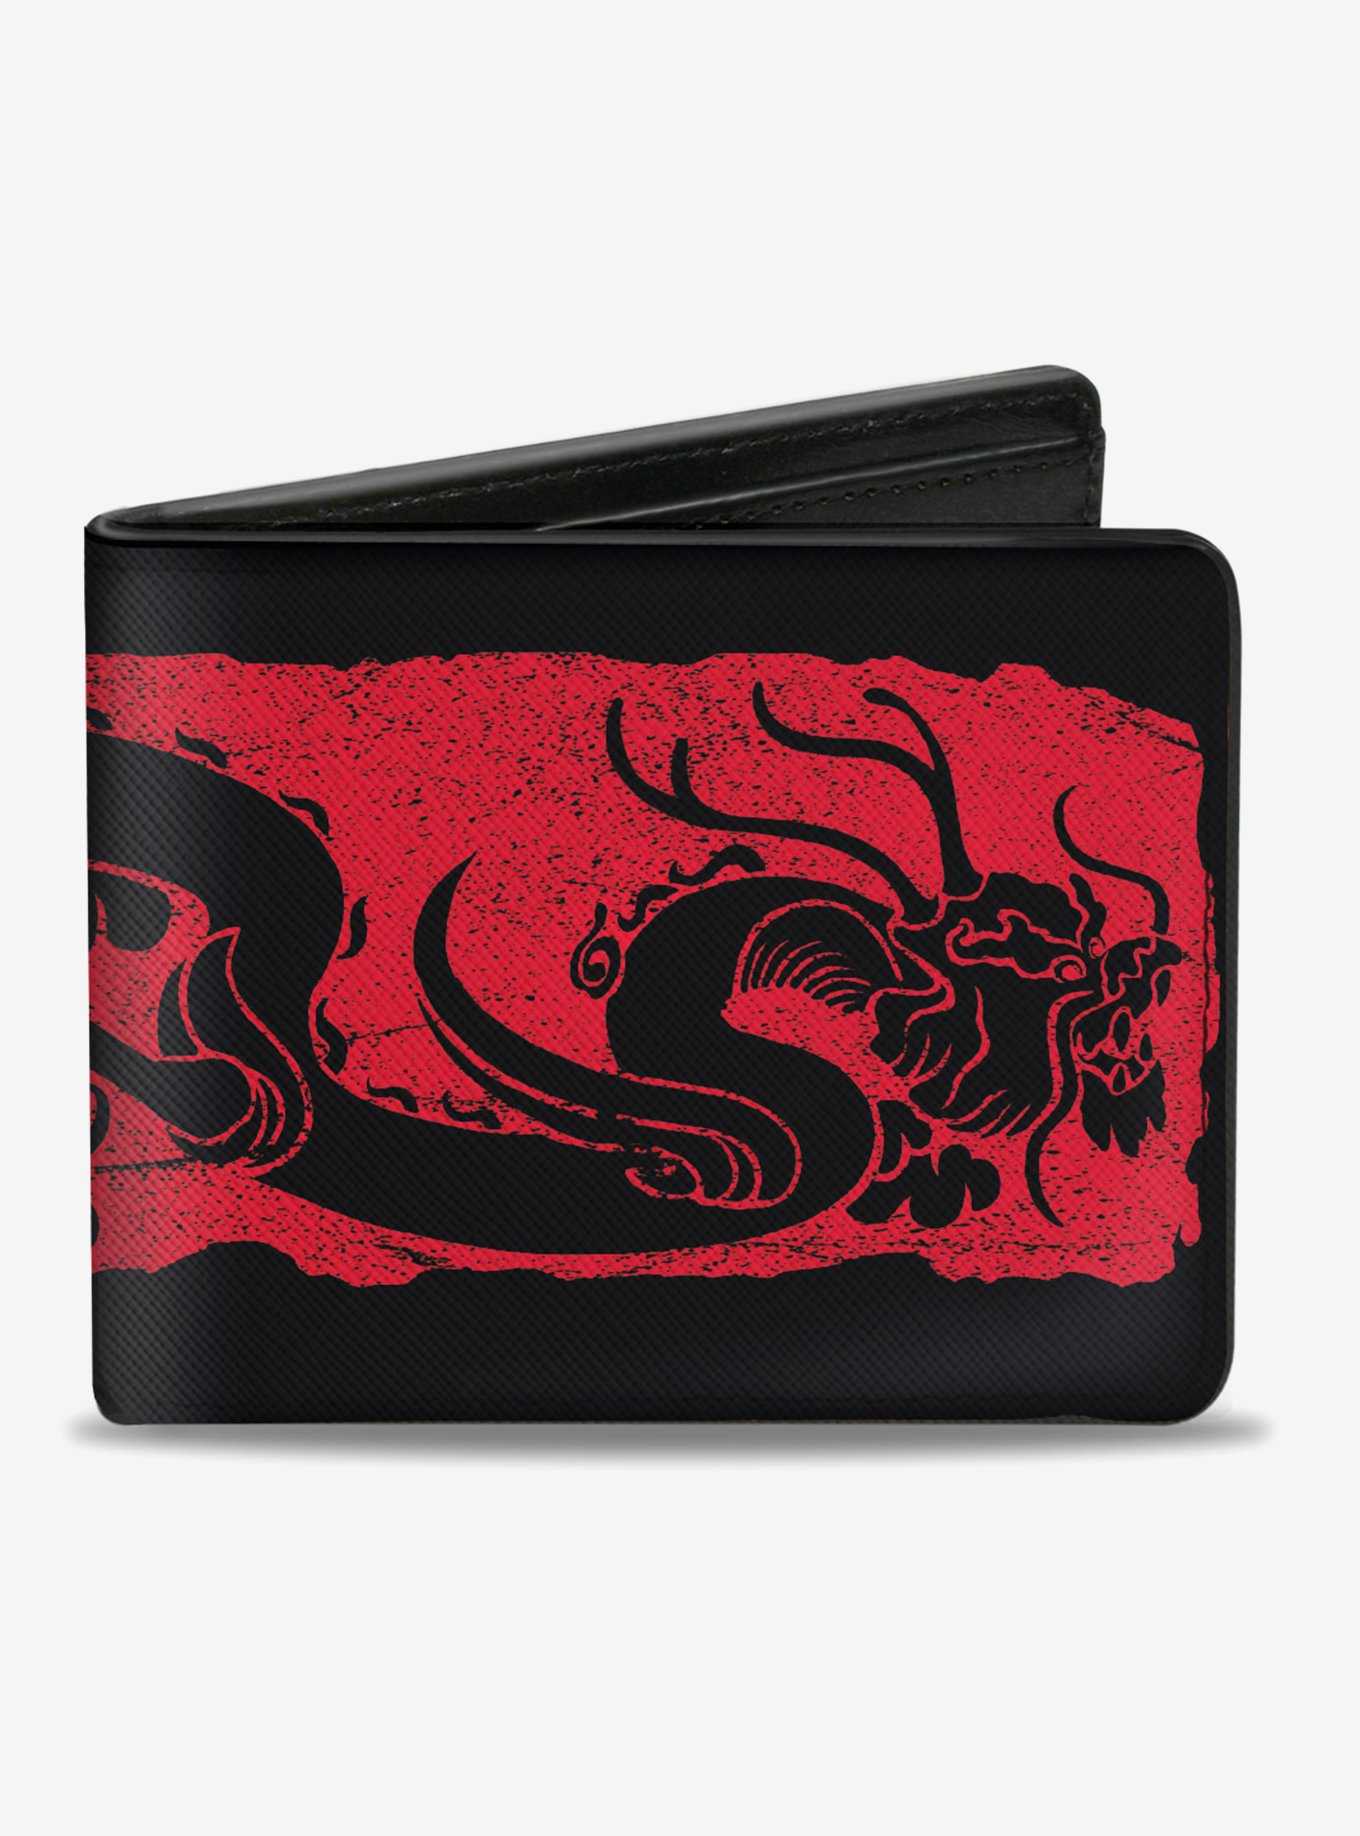 Disney Mulan Dragon Bifold Wallet, , hi-res